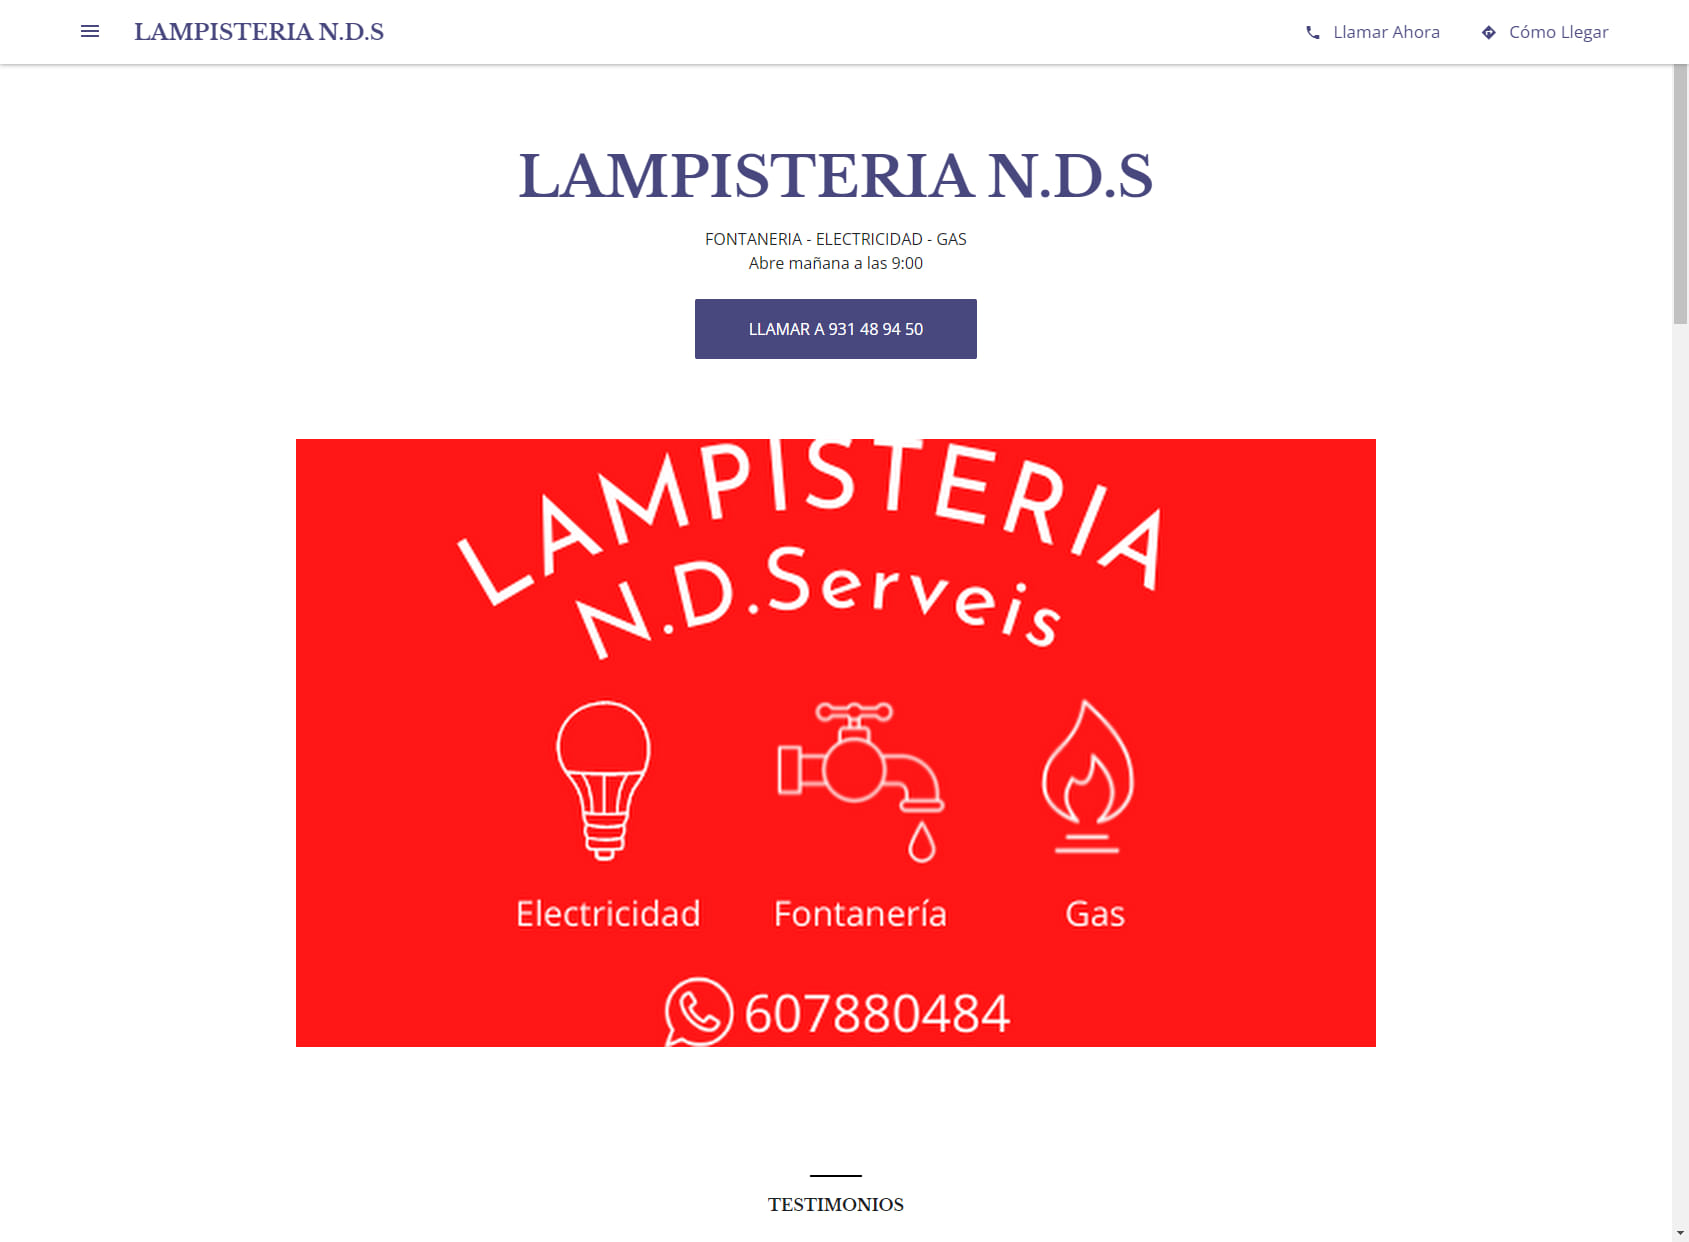 LAMPISTERIA N.D.S